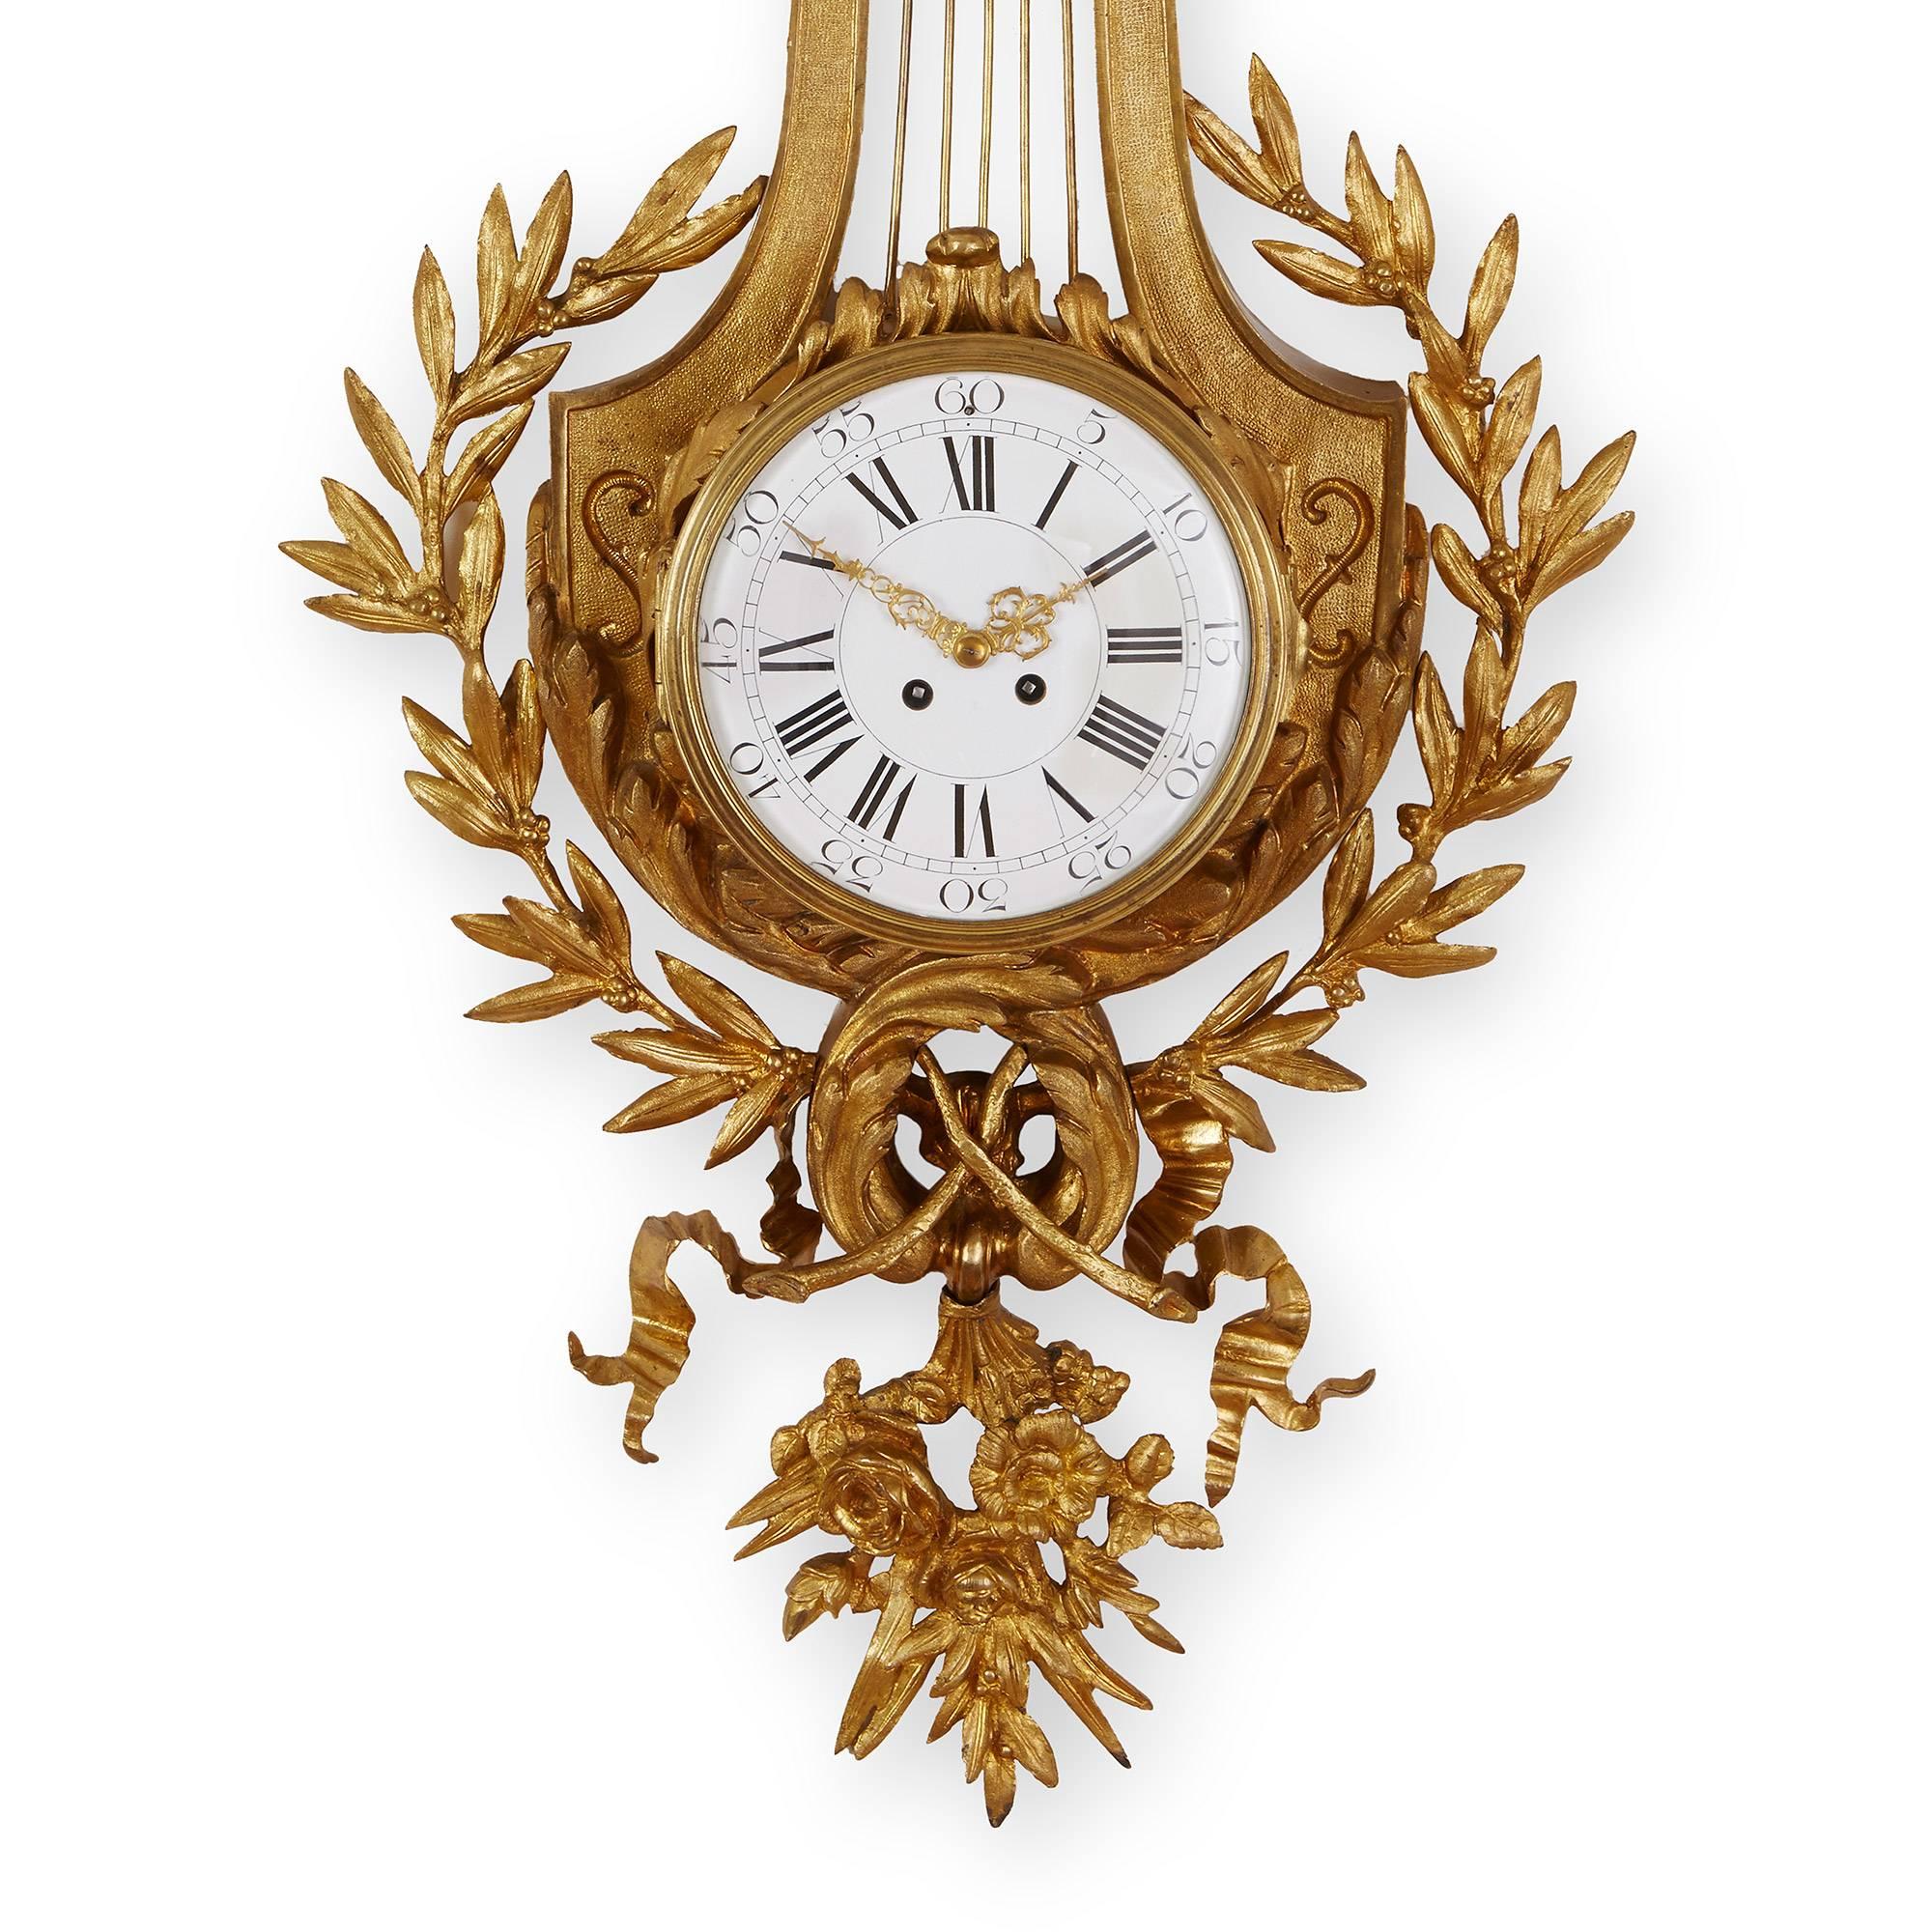 Diese elegante Cartel-Uhr ist im raffinierten neoklassischen Stil gehalten. Die Wanduhr verfügt über eine ungewöhnliche leierförmige Rückwand und einen doppelköpfigen Adler, der von einem kunstvollen Bogen gekrönt wird. Das Zifferblatt hat sowohl